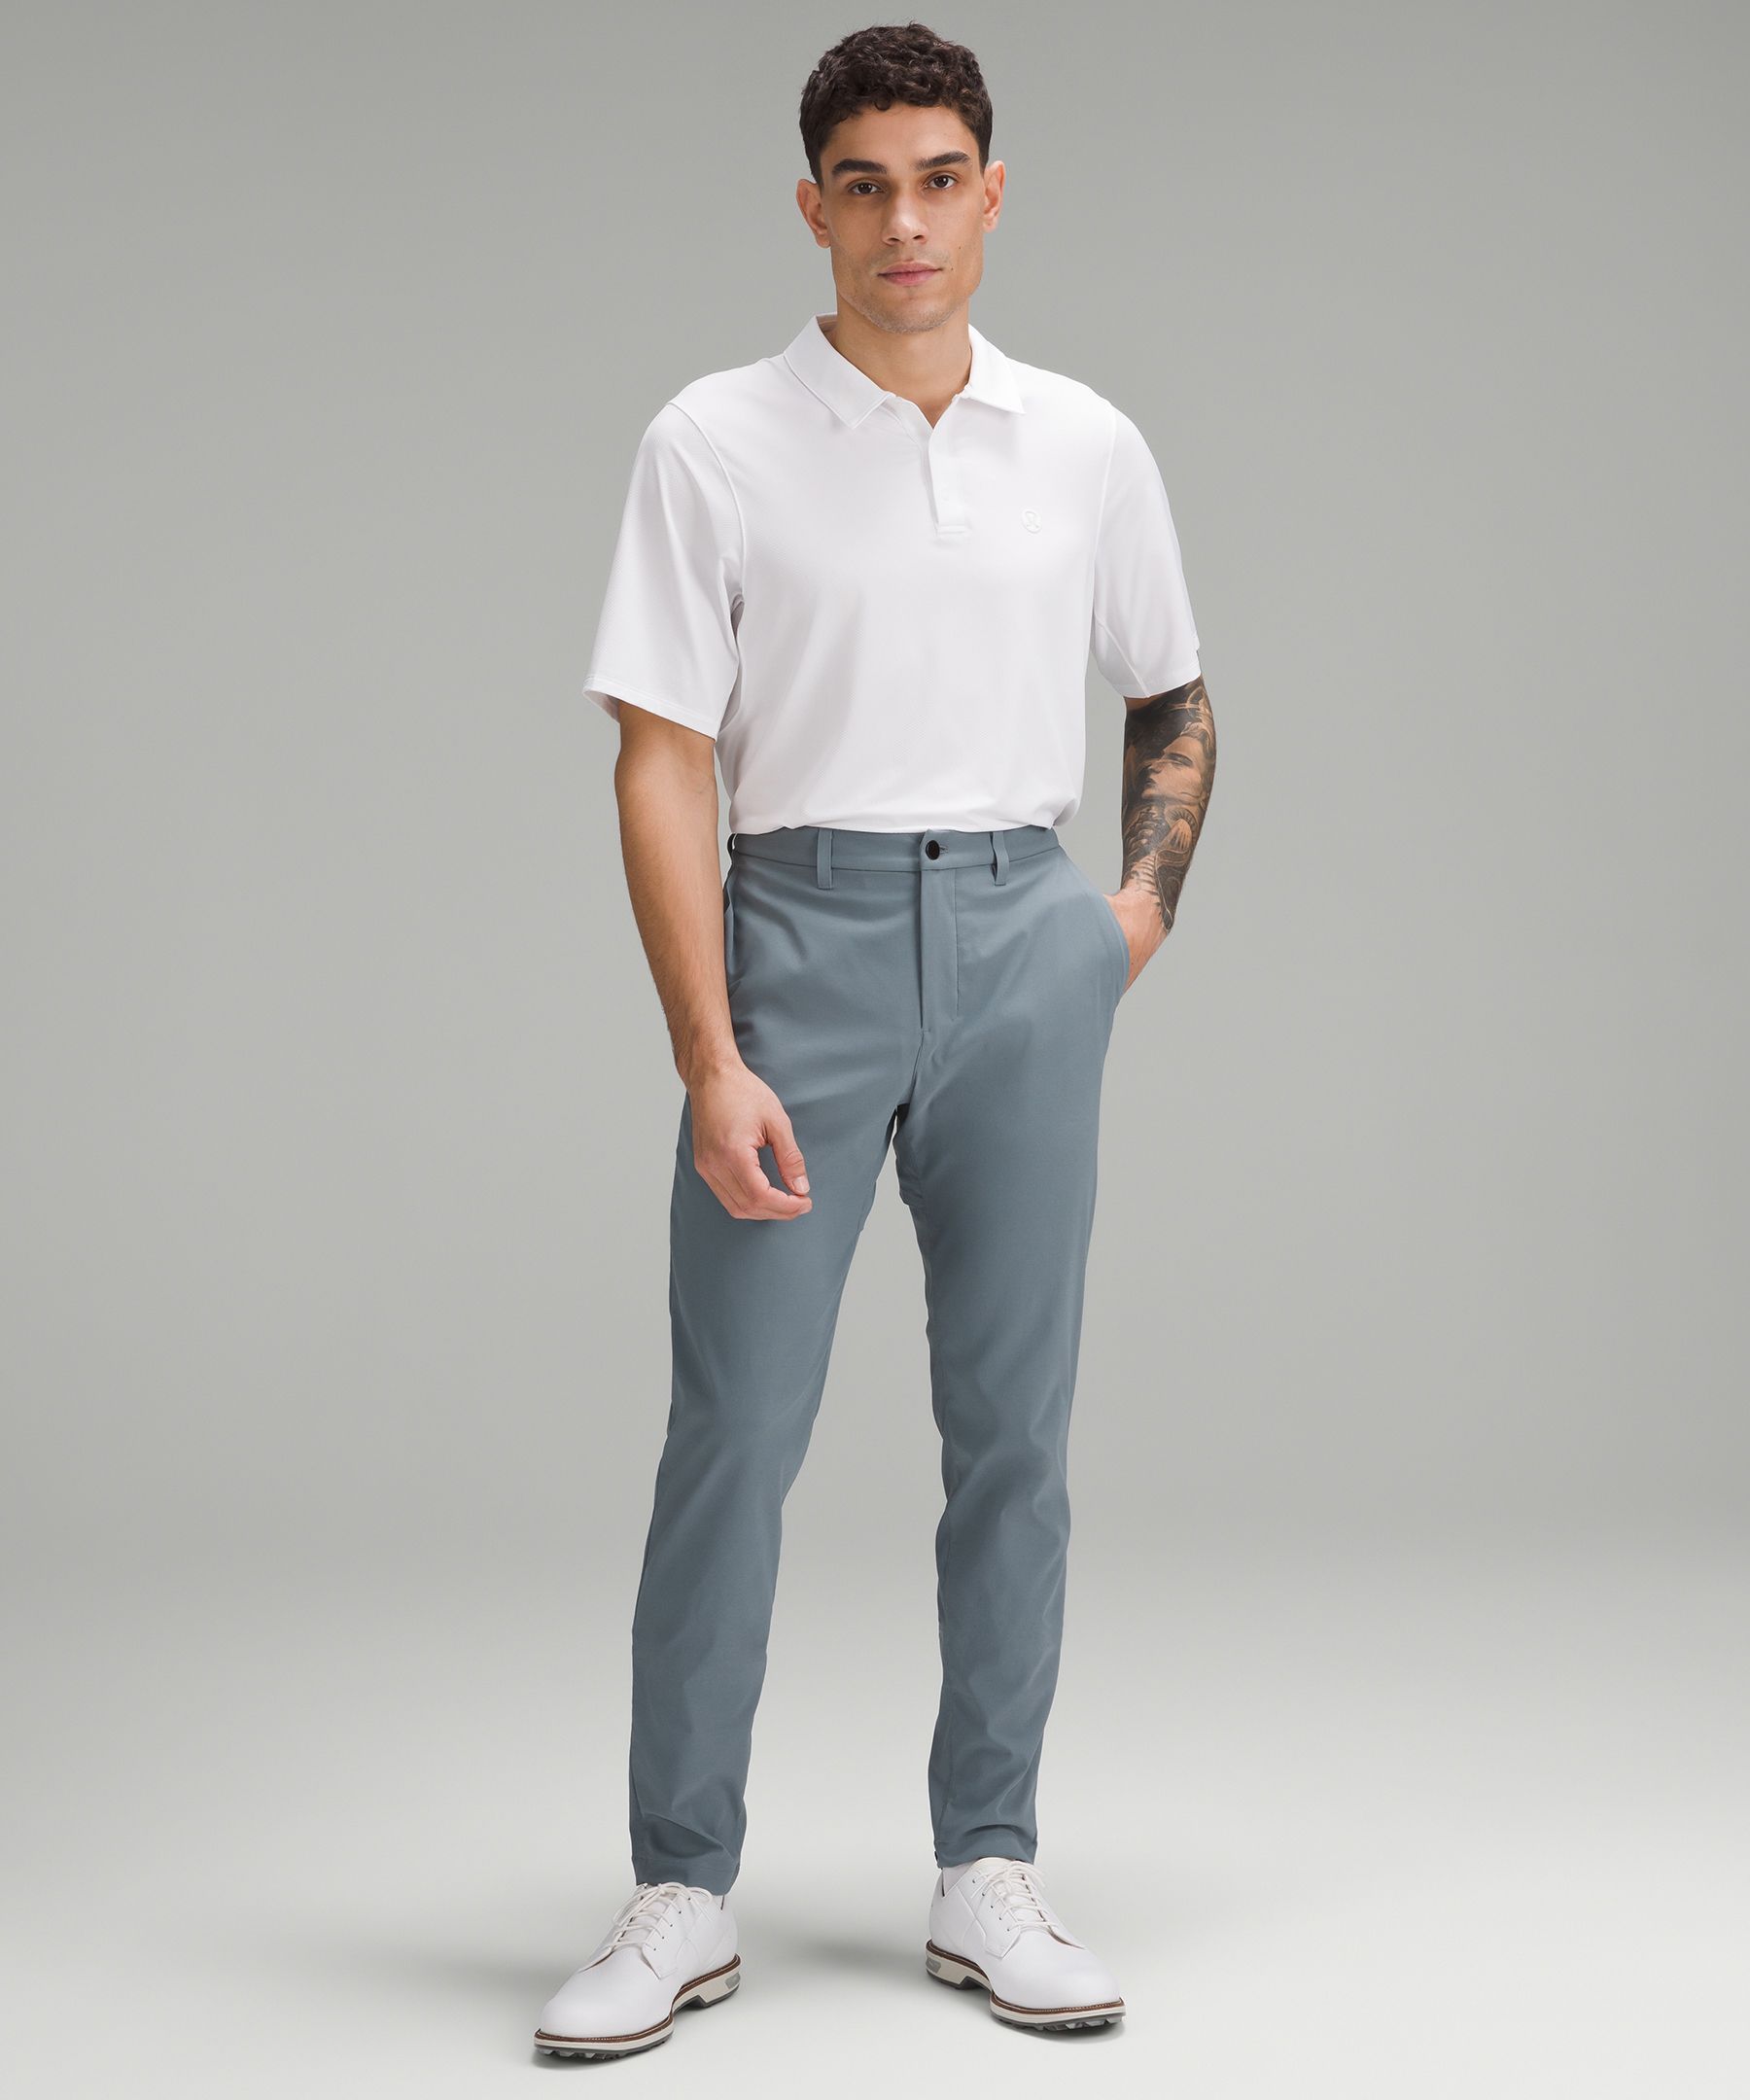 ABC Slim-Fit Golf Trouser 30"L | Men's Trousers